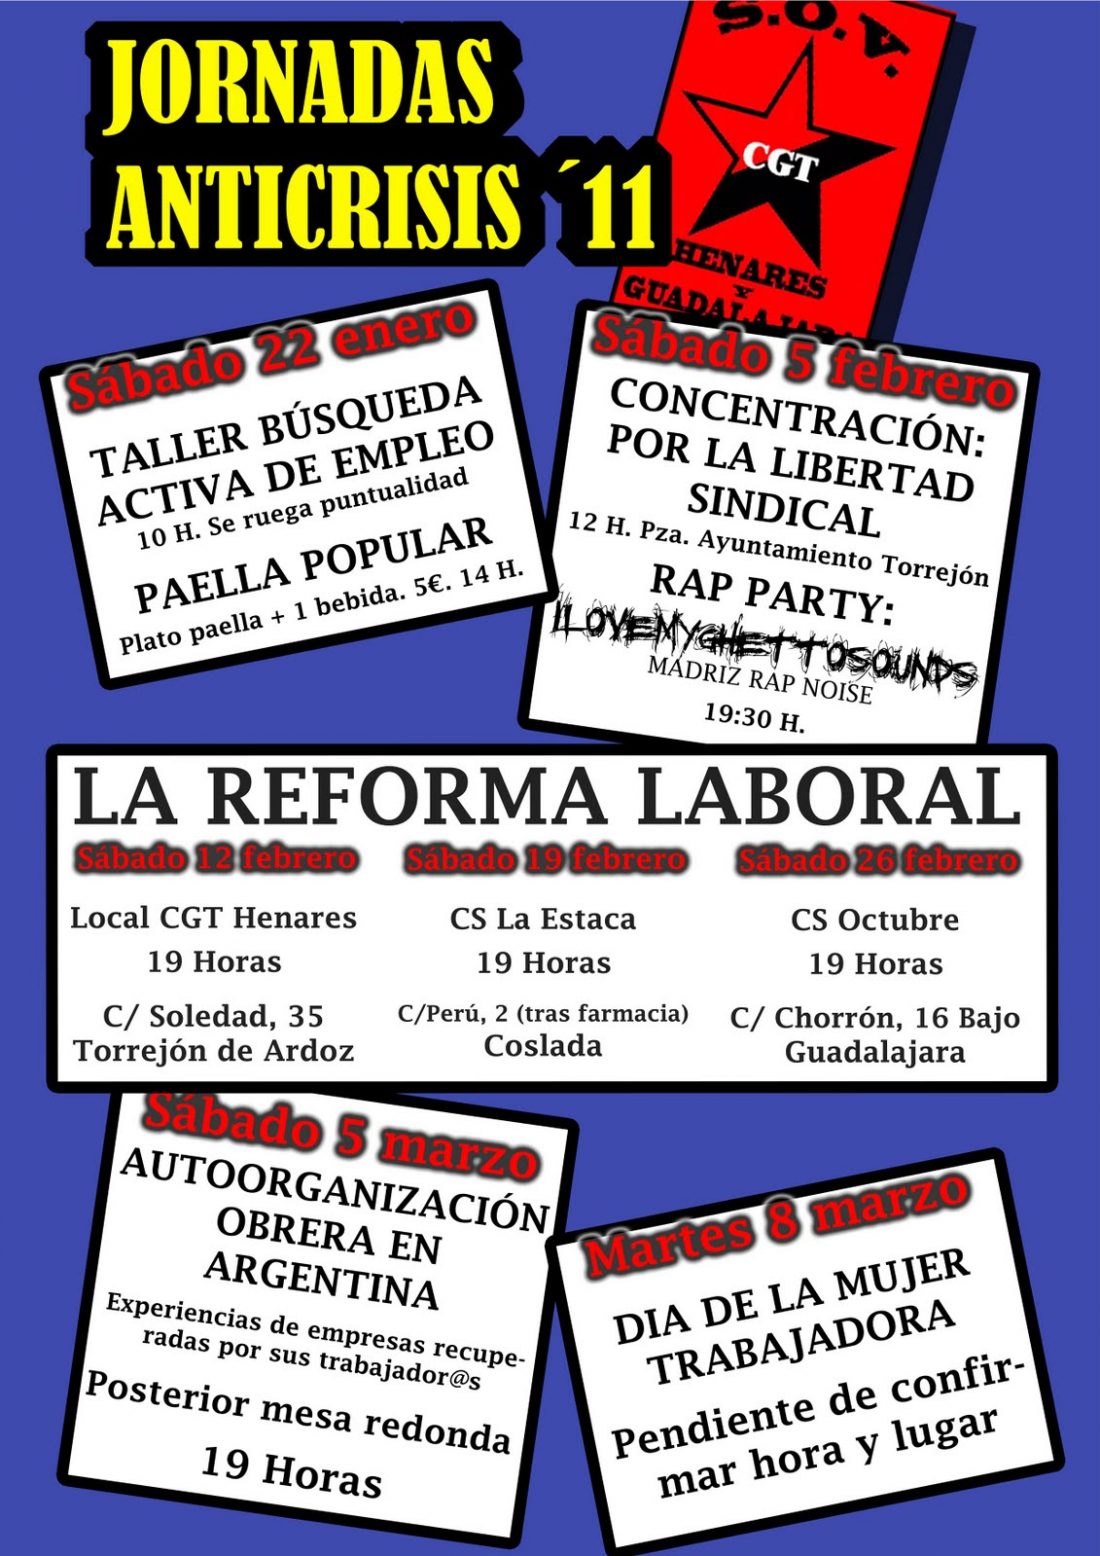 Torrejón de Ardoz, 5 de febrero : Concentración contra la represión sobre CGT del Ayuntamiento